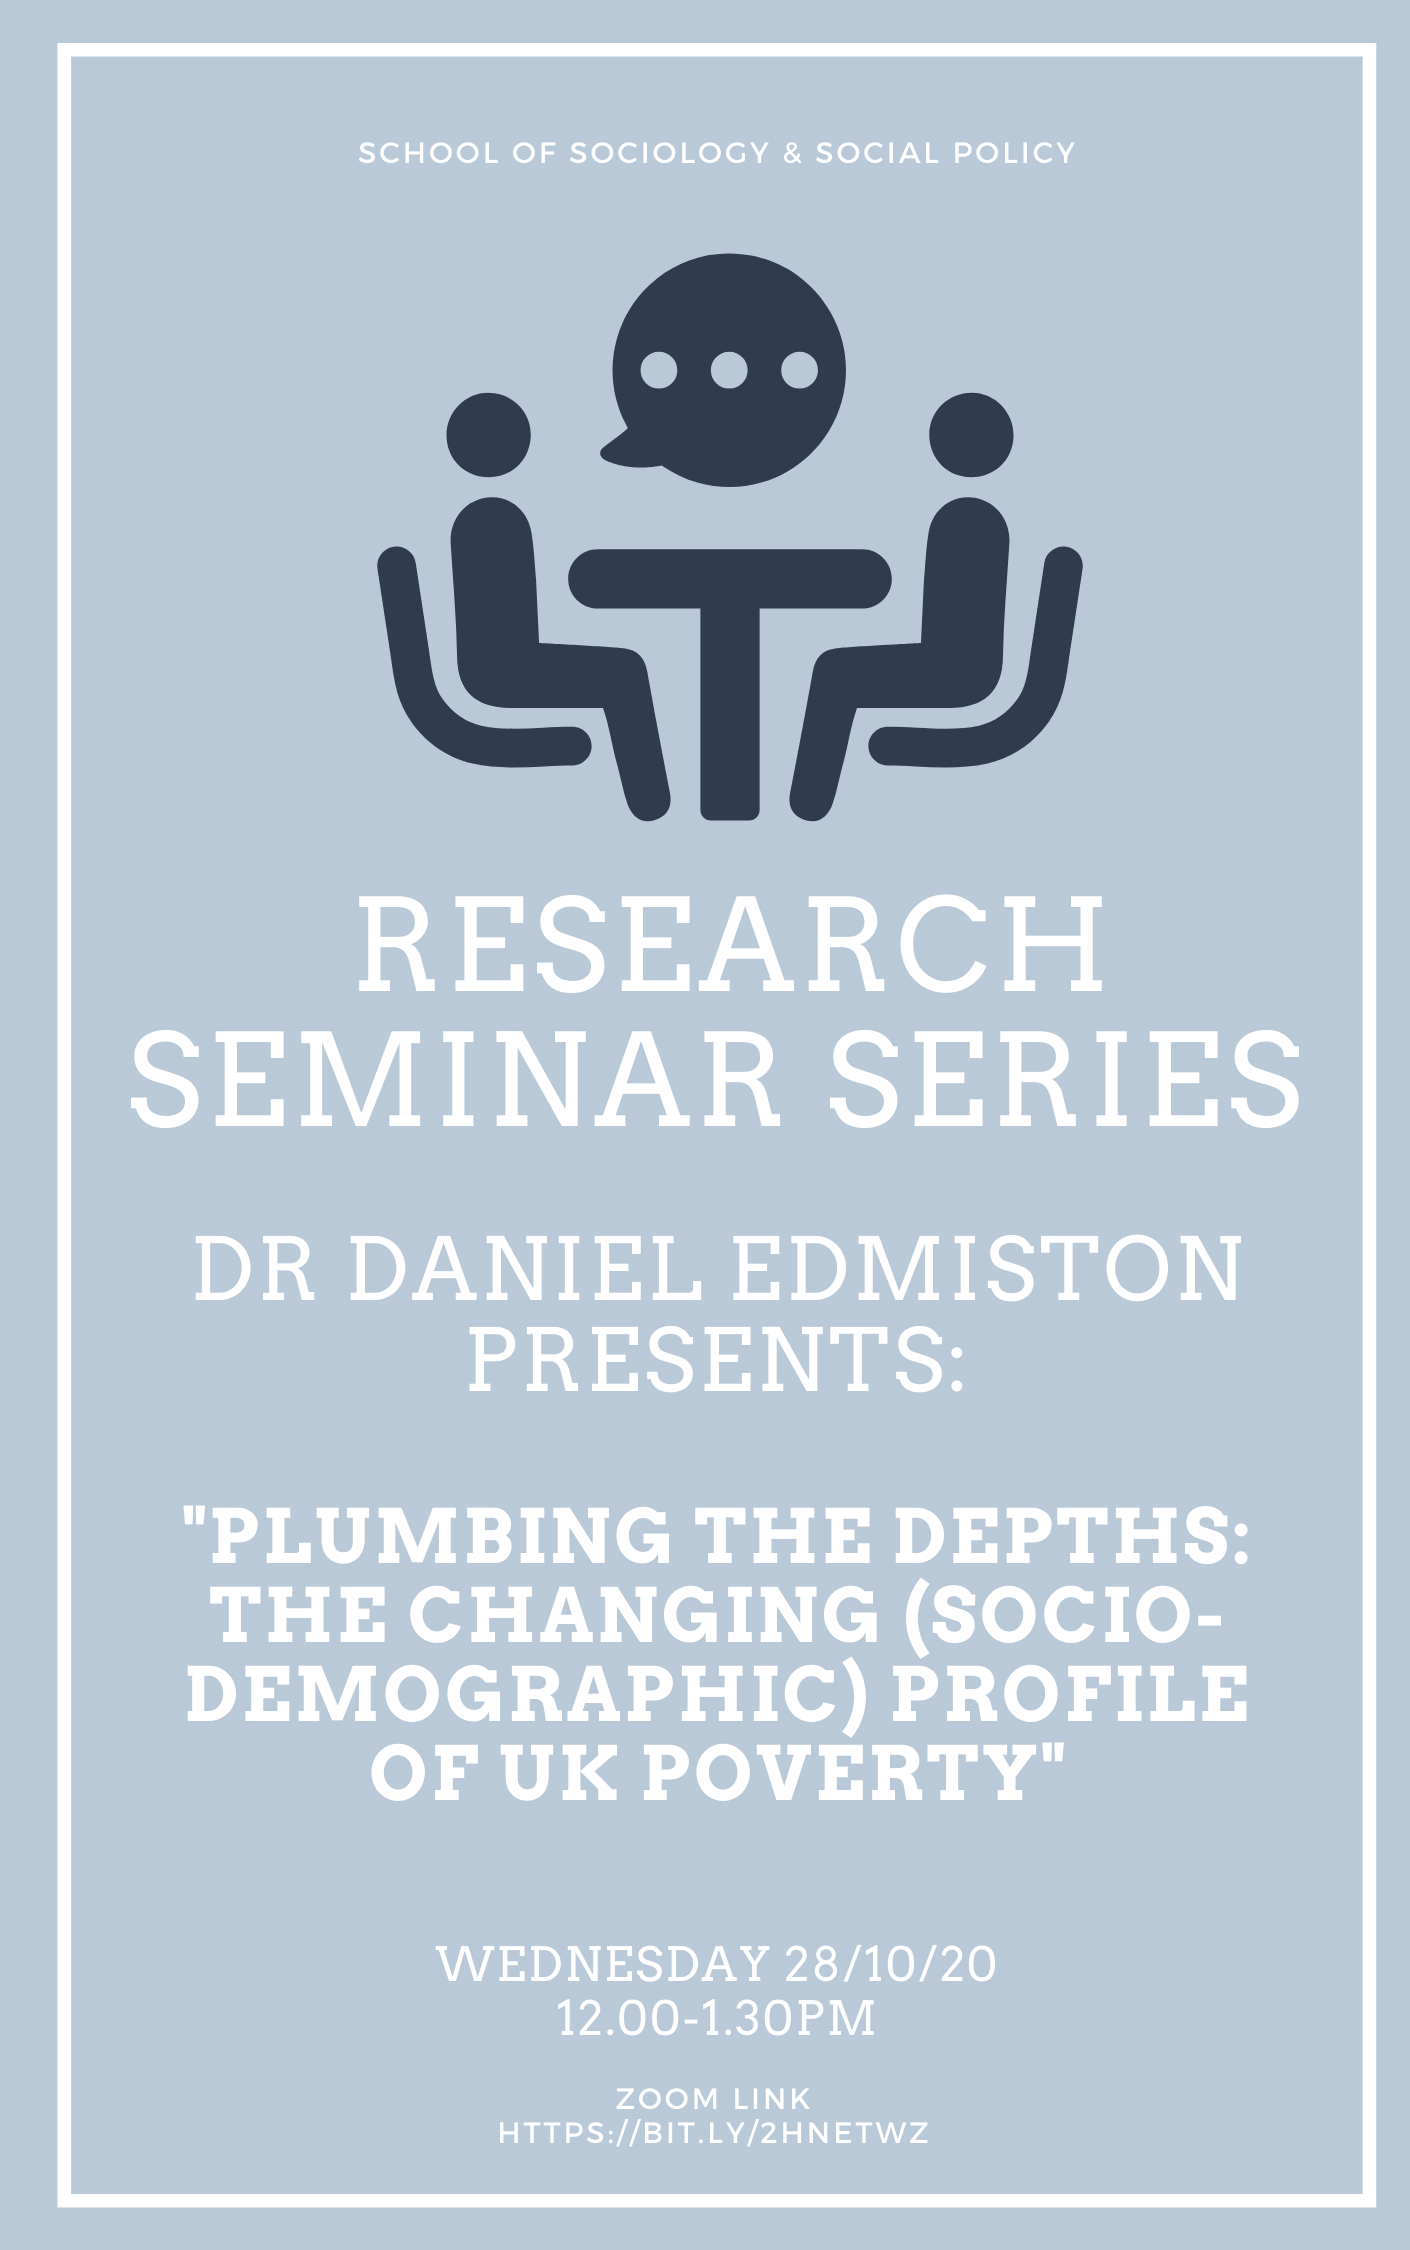 Ssp research seminar poster